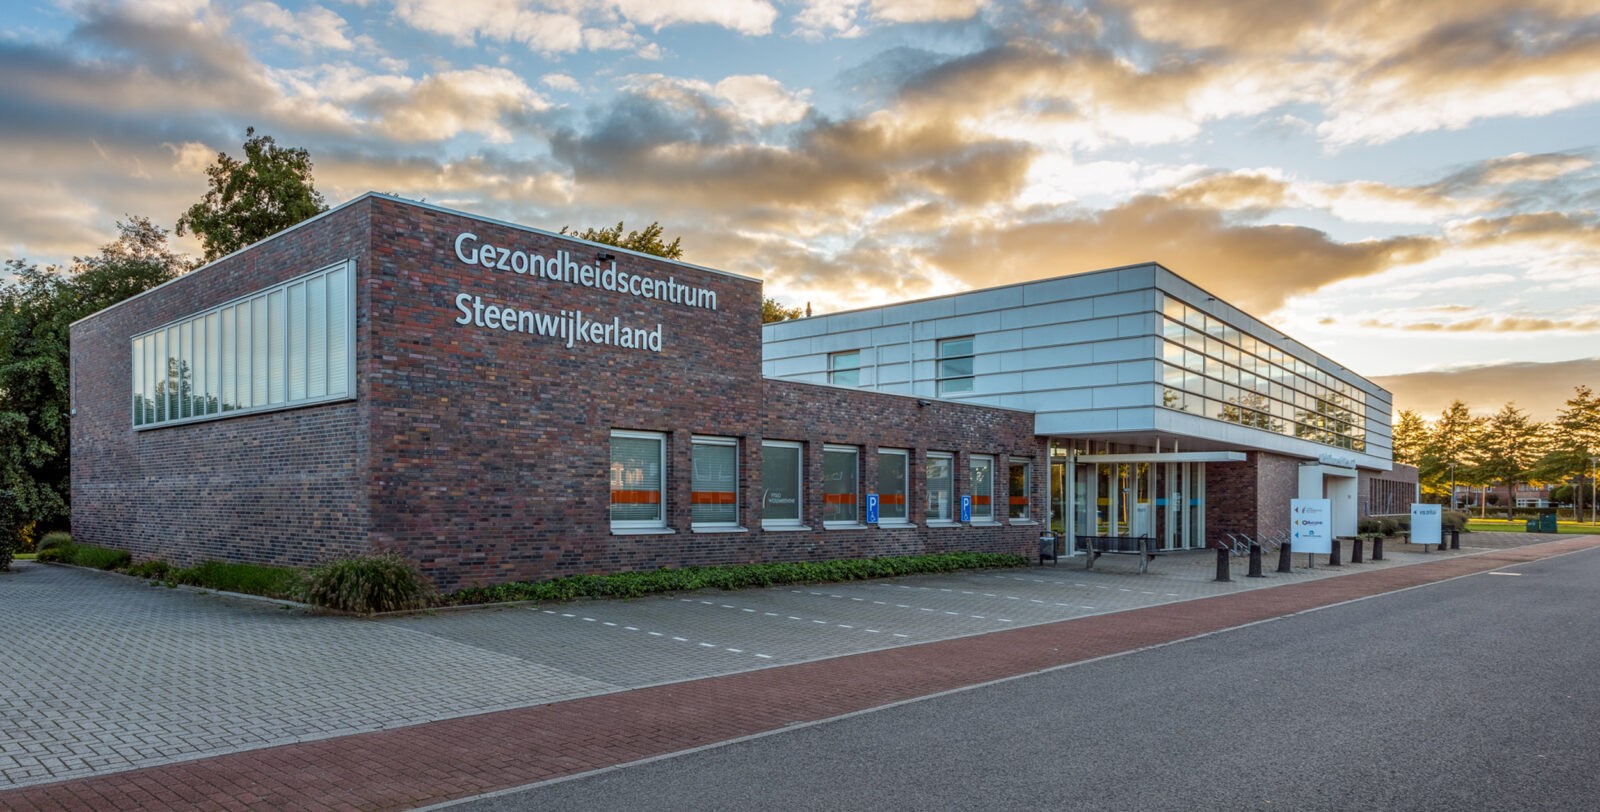 Gezondheidscentrum Steenwijkerland in Steenwijk